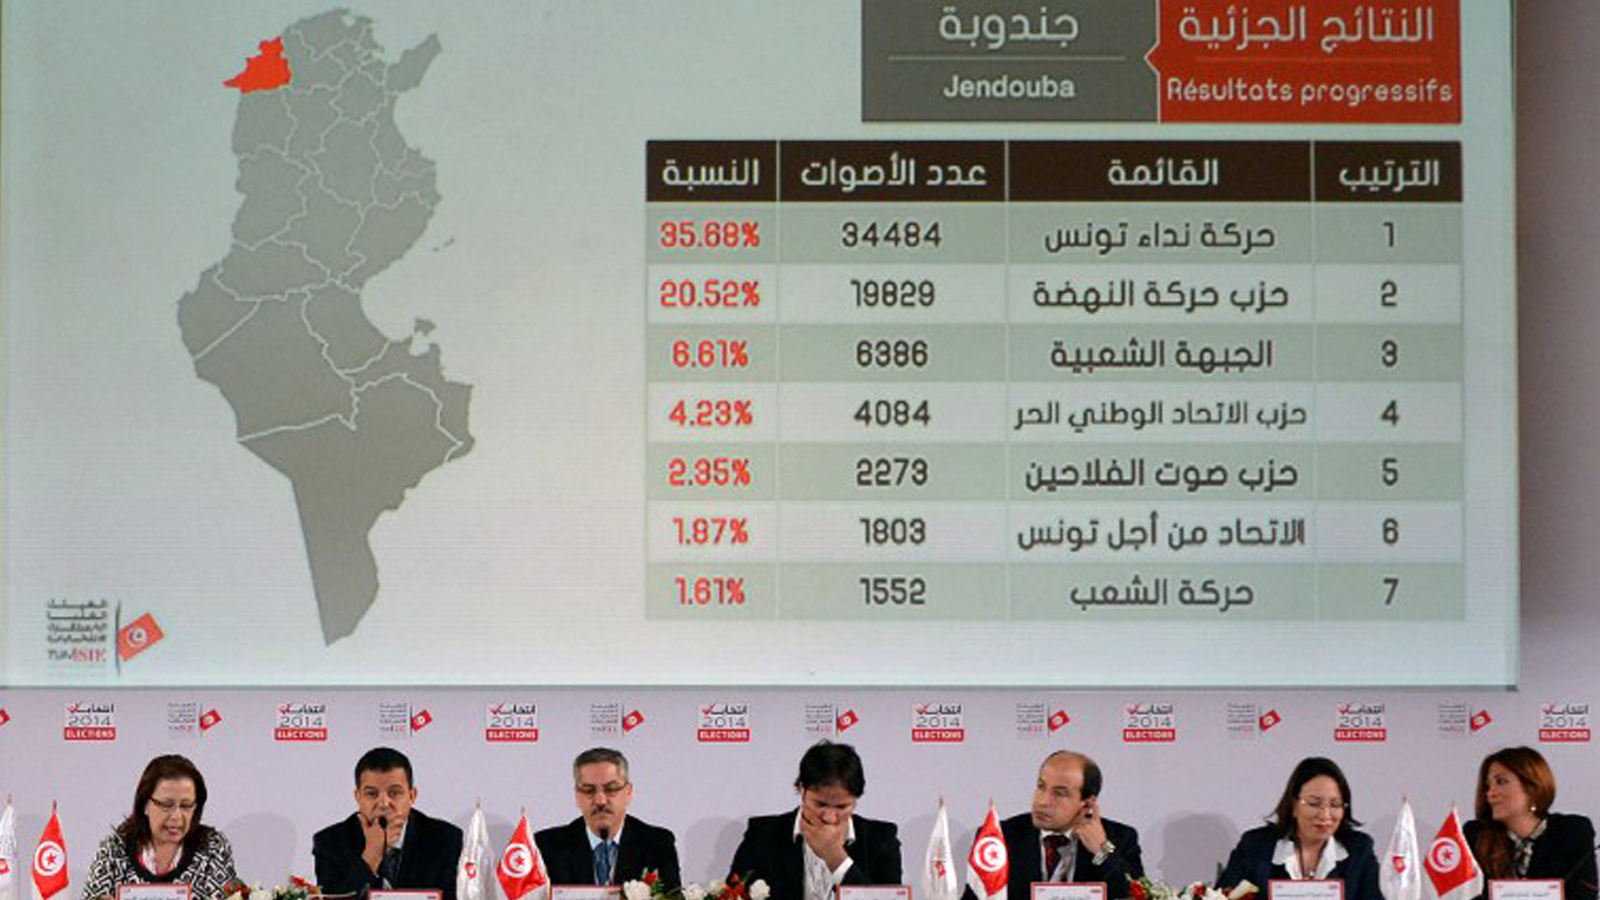 تونس: اليسار بين المشاركة بالحكومة والاكتفاء بـ"الأقلية الضاغطة"